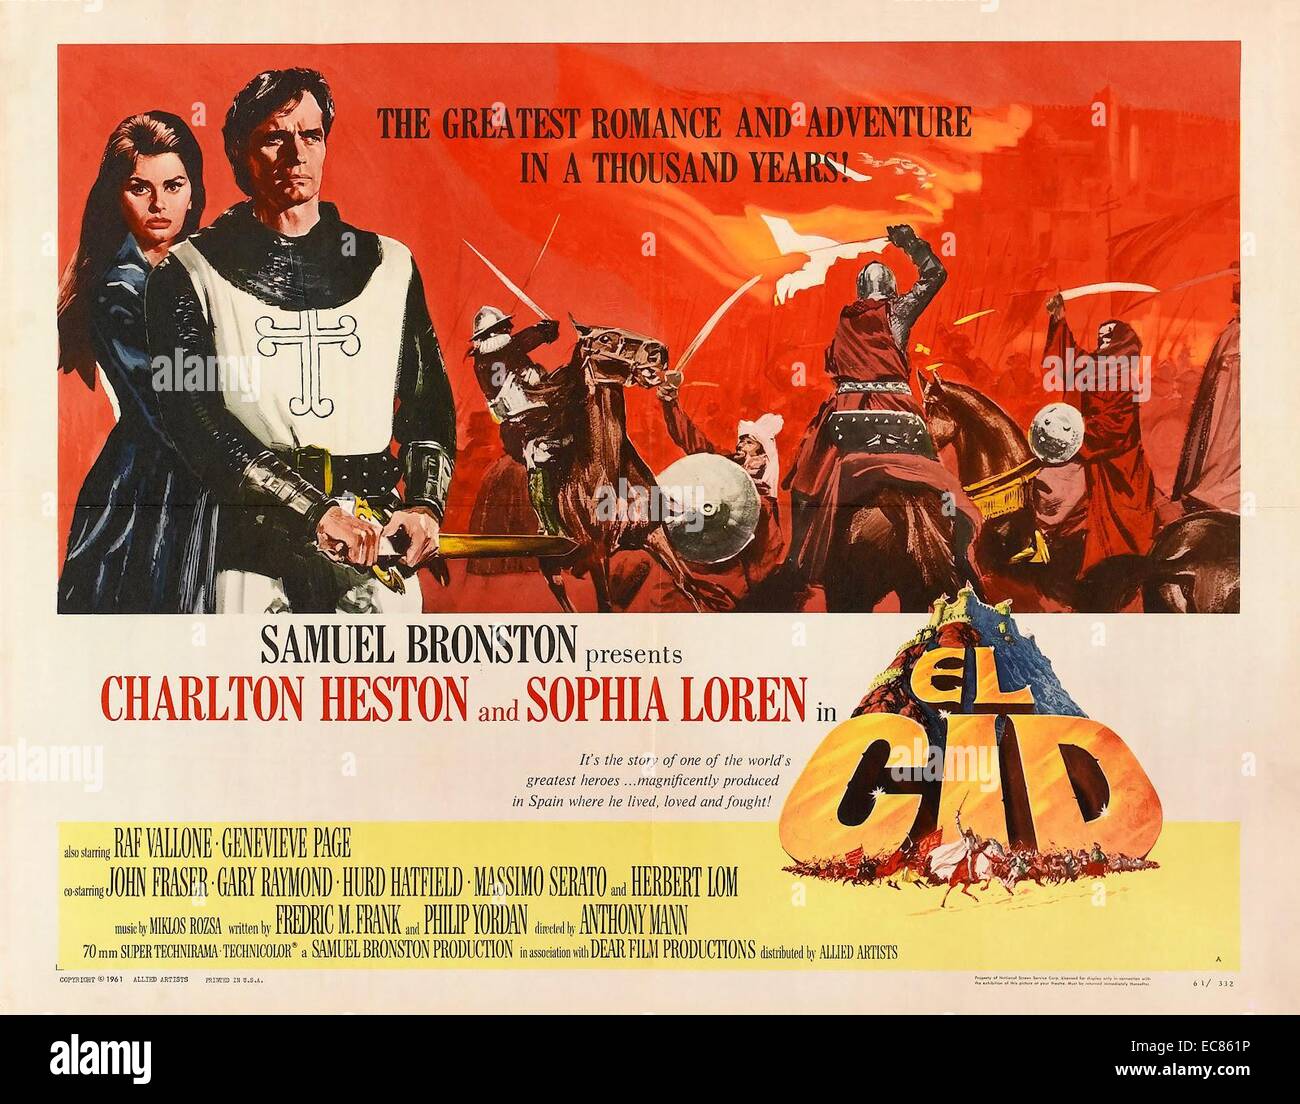 Le film épique de 1961 ; El Cid, était une histoire romancée de la vie de Rodrigo Díaz de Vivar, où El Cid a été interprété par Charlton Heston. Rodrigo Díaz de Vivar (ch. 1043 - 1099) était un noble castillan et chef militaire en Espagne médiévale Banque D'Images